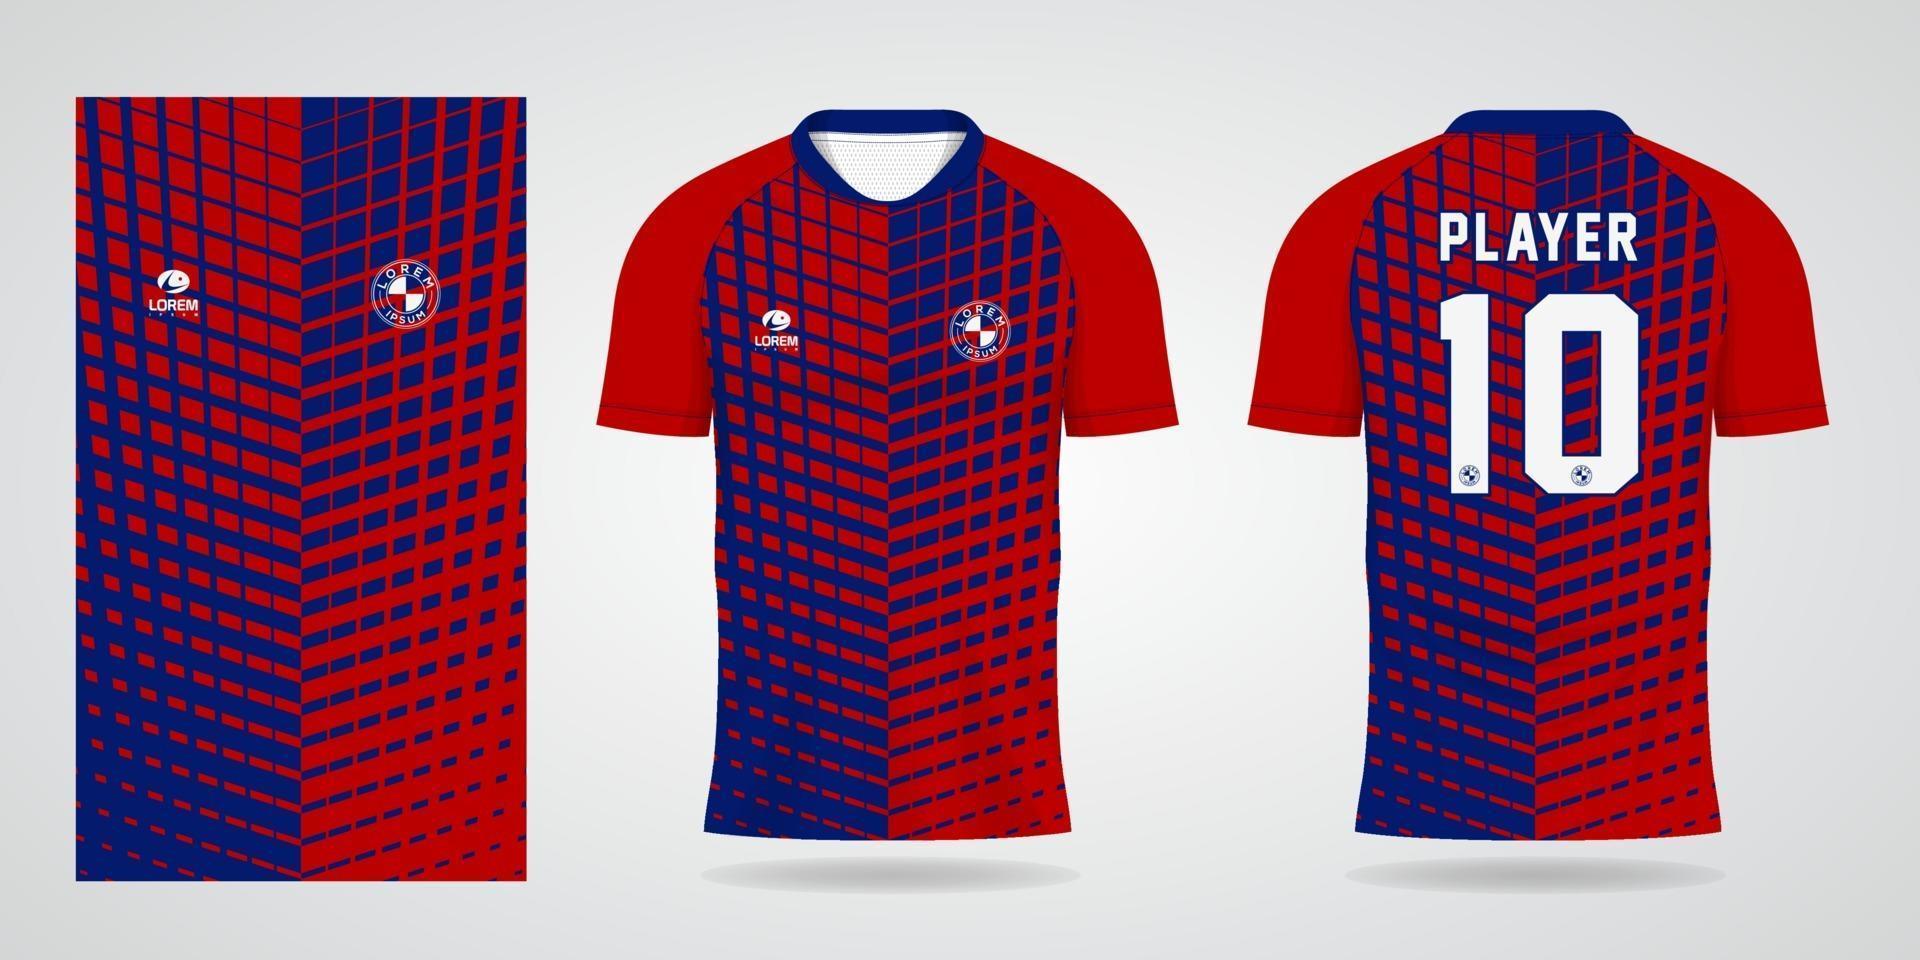 rot-blaue Trikot-Vorlage für Teamuniformen und Fußball-T-Shirt-Design vektor